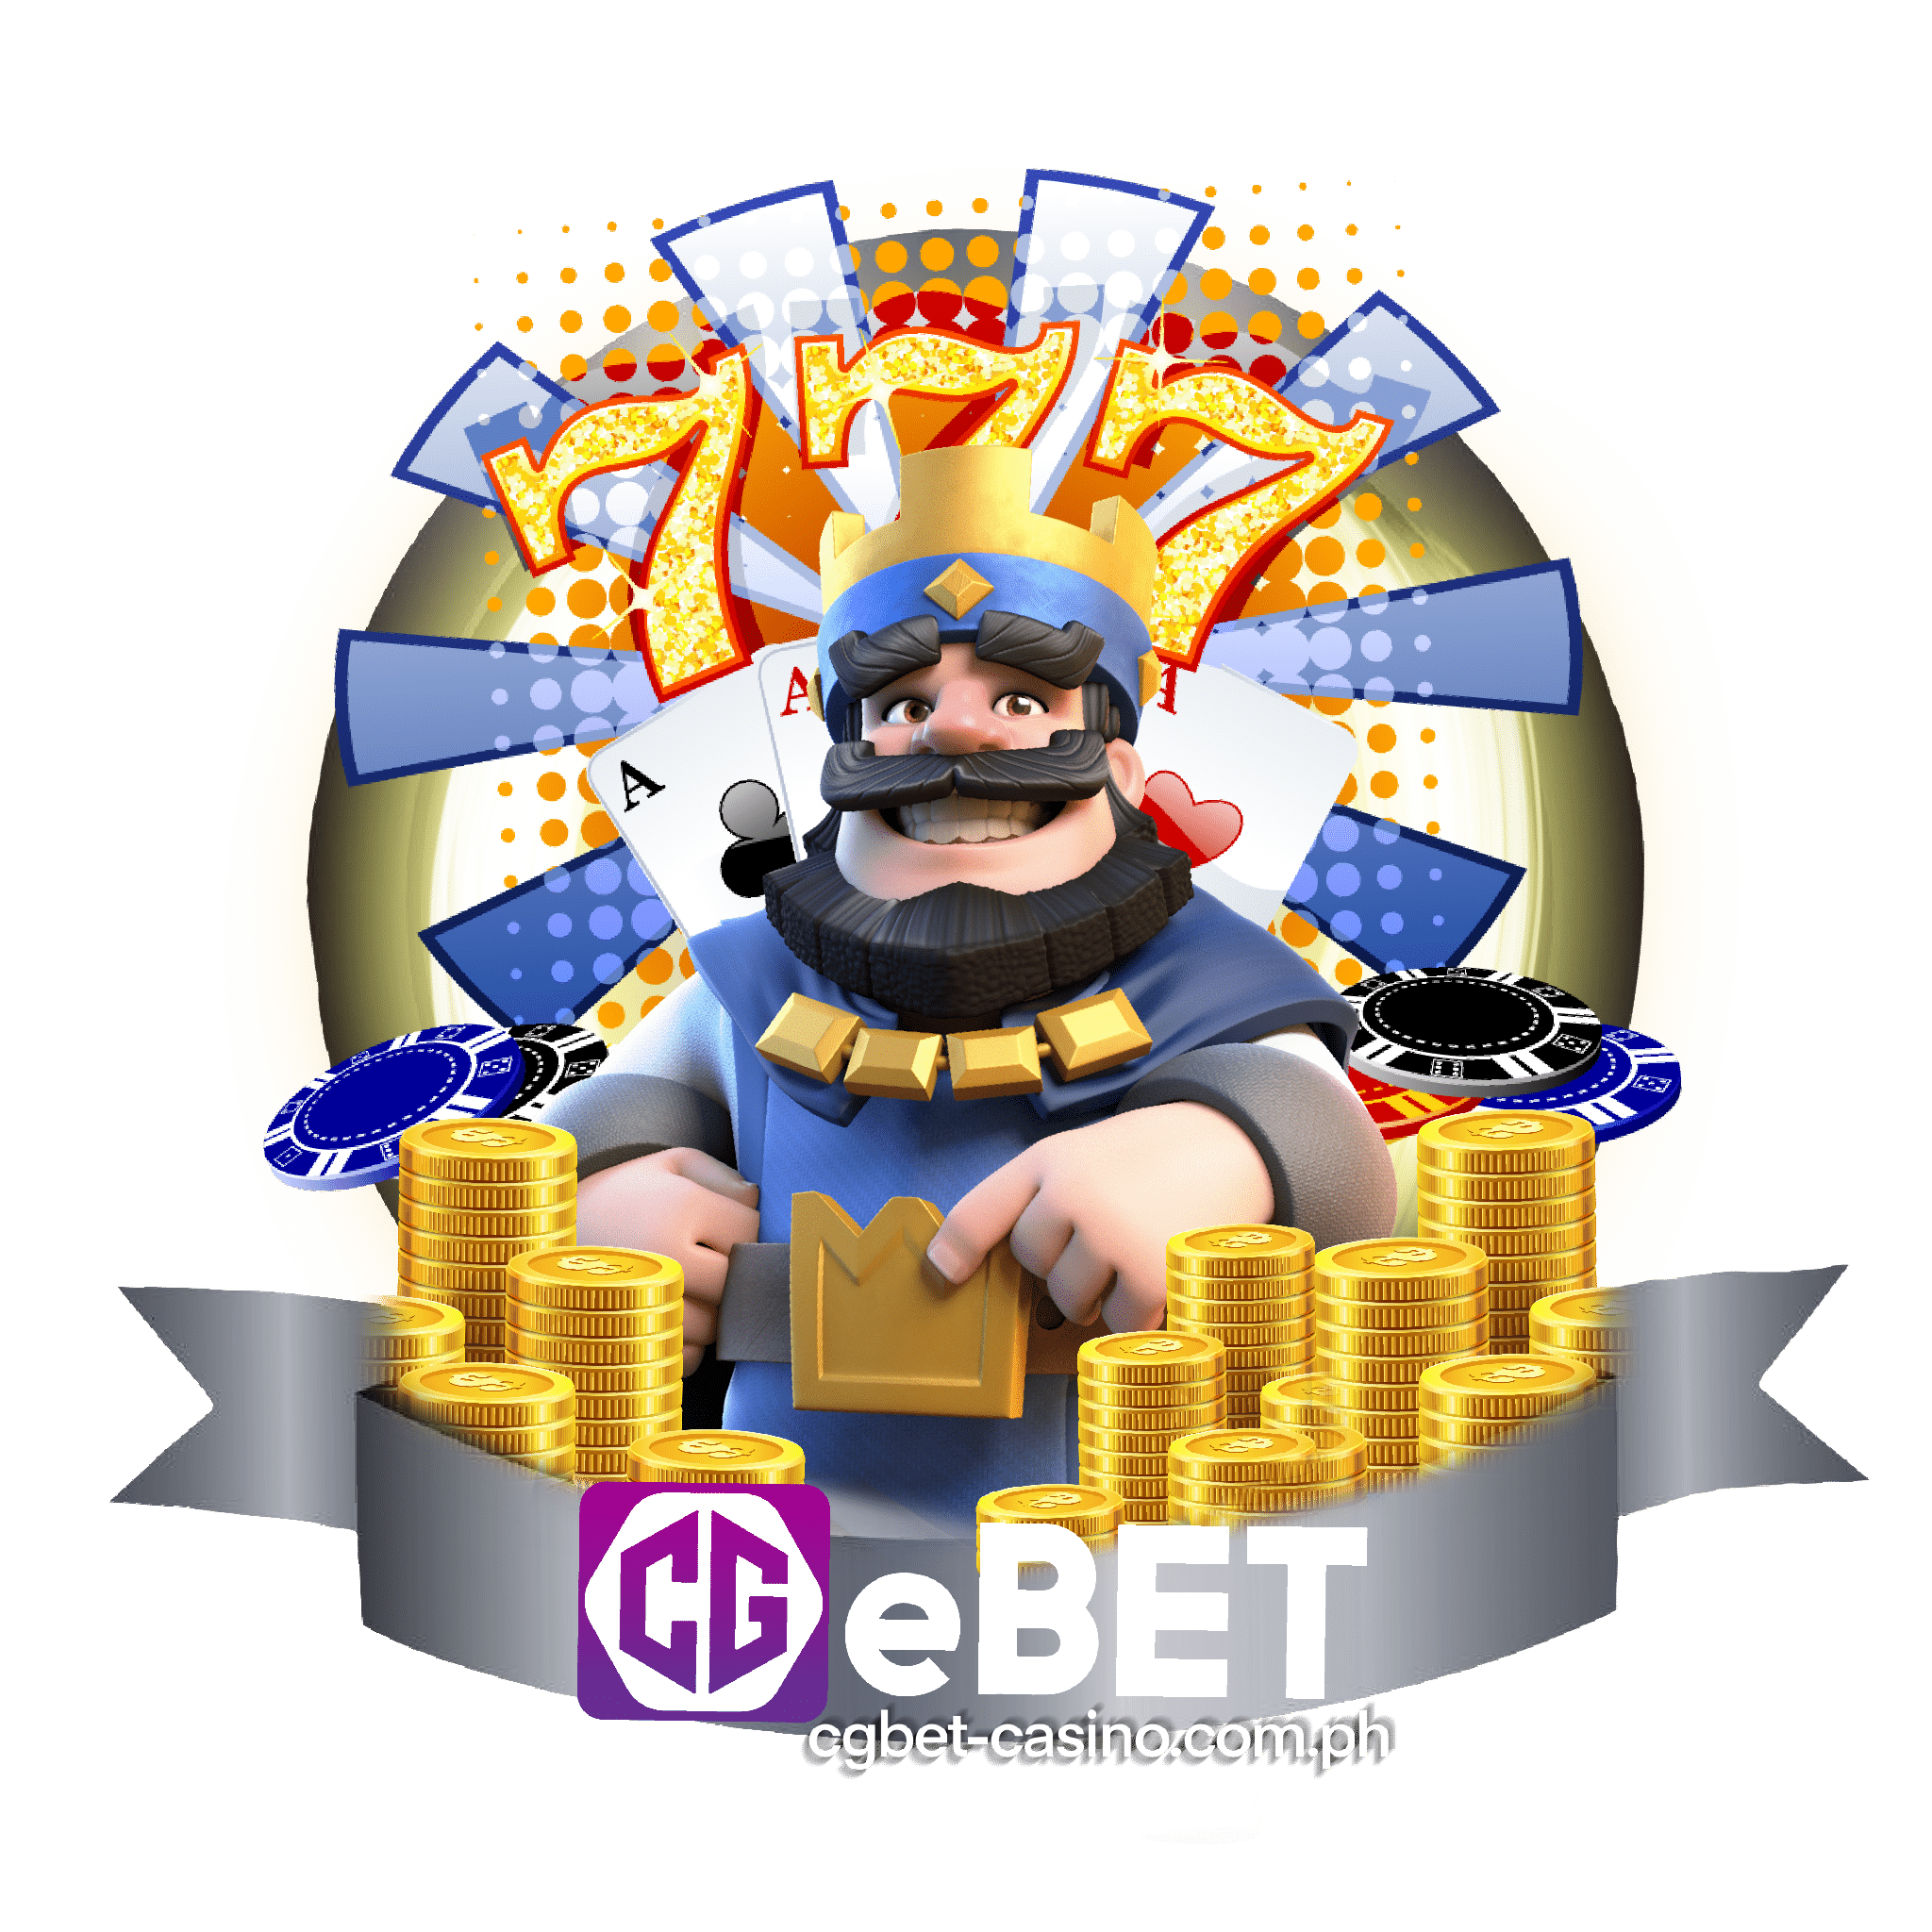 CGEBET Online Casino